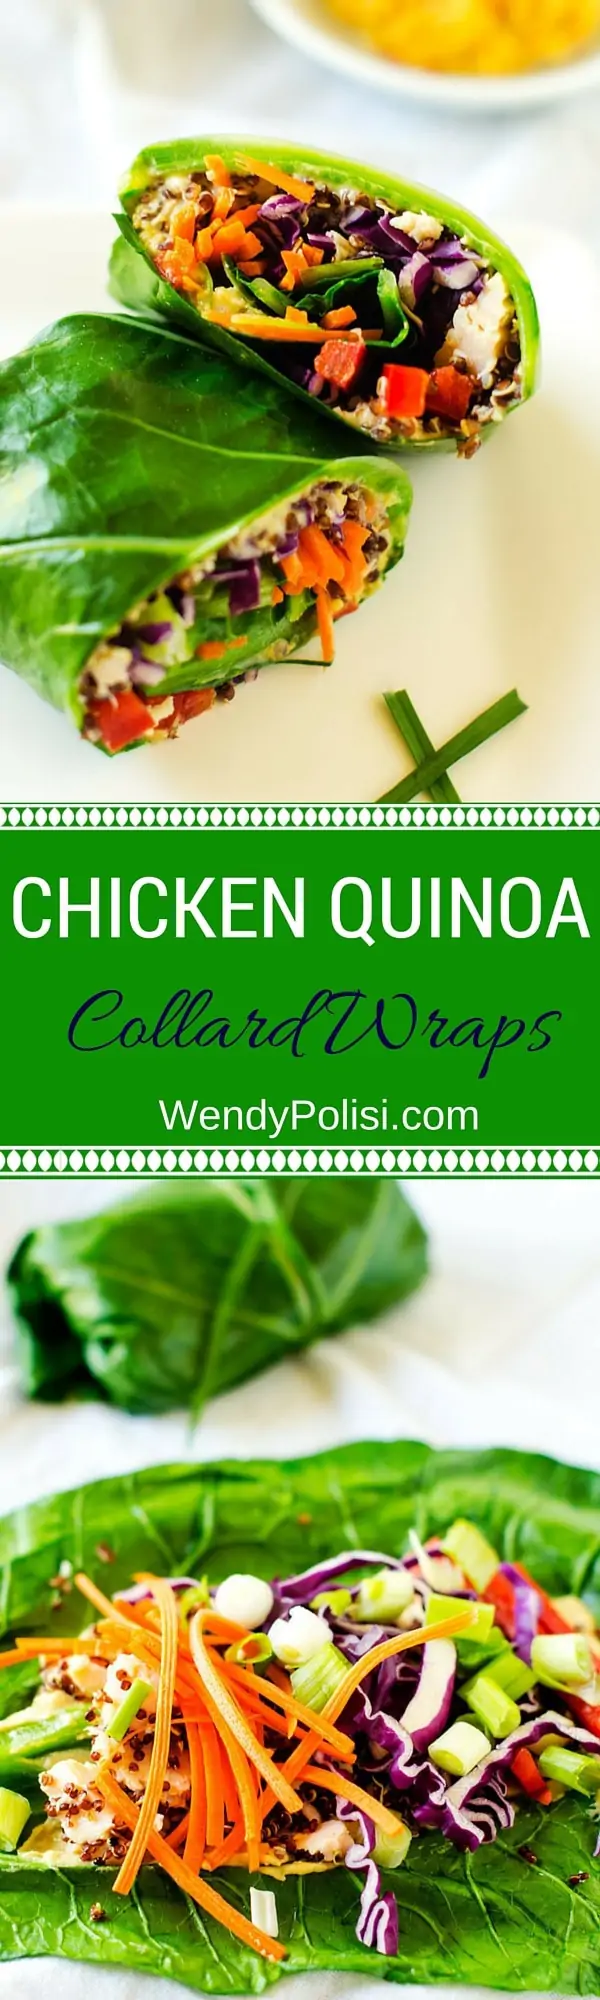 Chicken Quinoa Collard Wraps - WendyPolisi.com